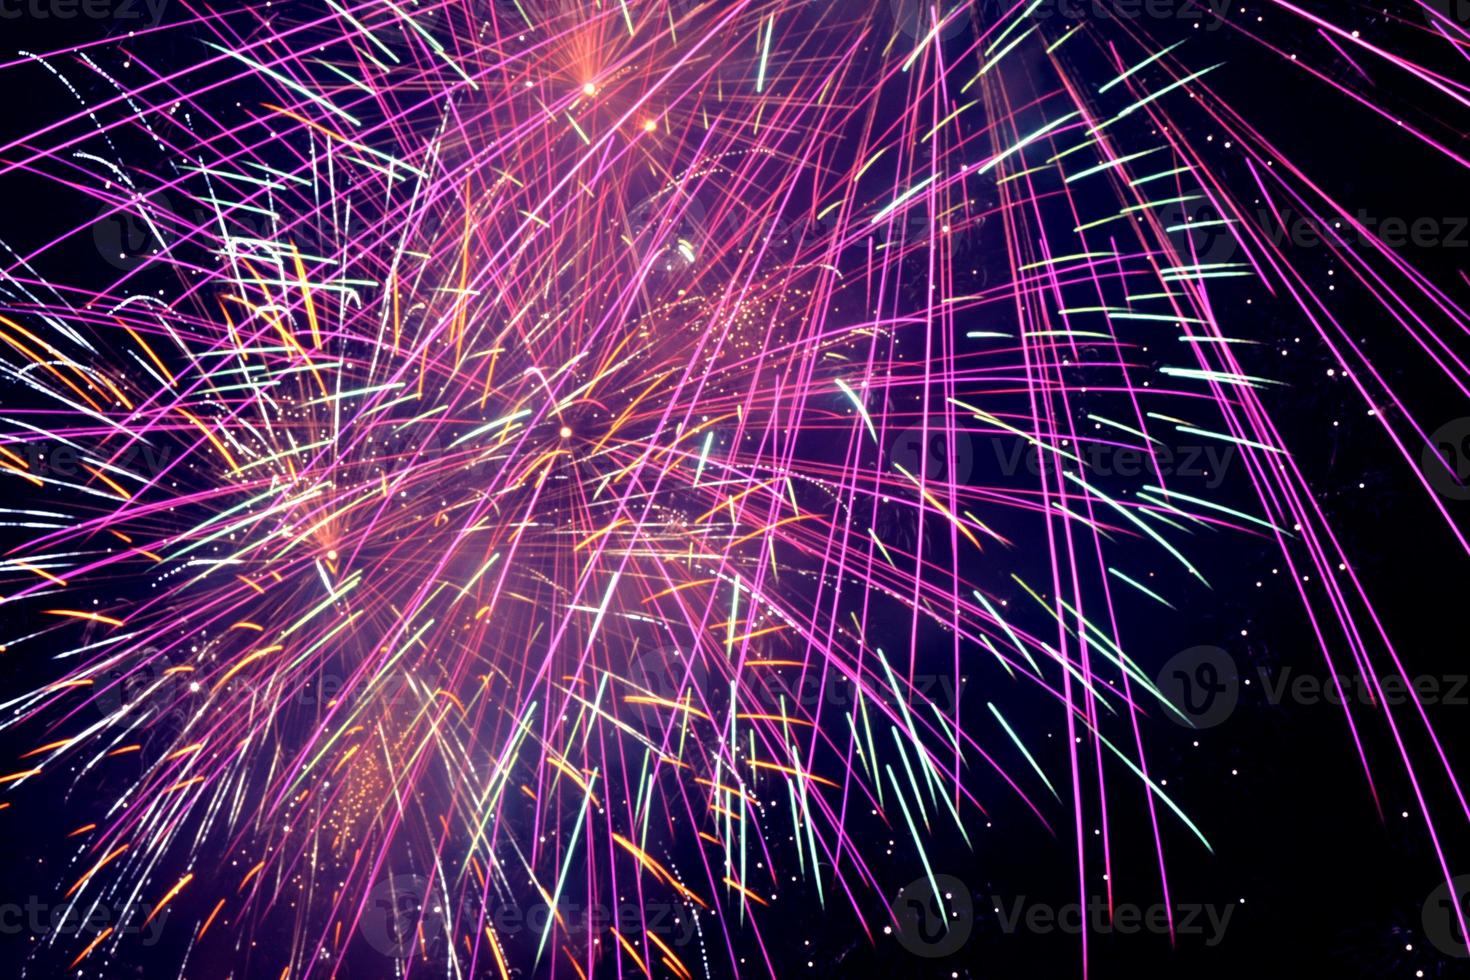 paars vuurwerk in een donkere lucht. paarse feestelijke knaller. helder paars, roze en oranje vuurwerk in de nachtelijke hemel. Paars en blauw vuurwerk in de nachtelijke hemel. foto